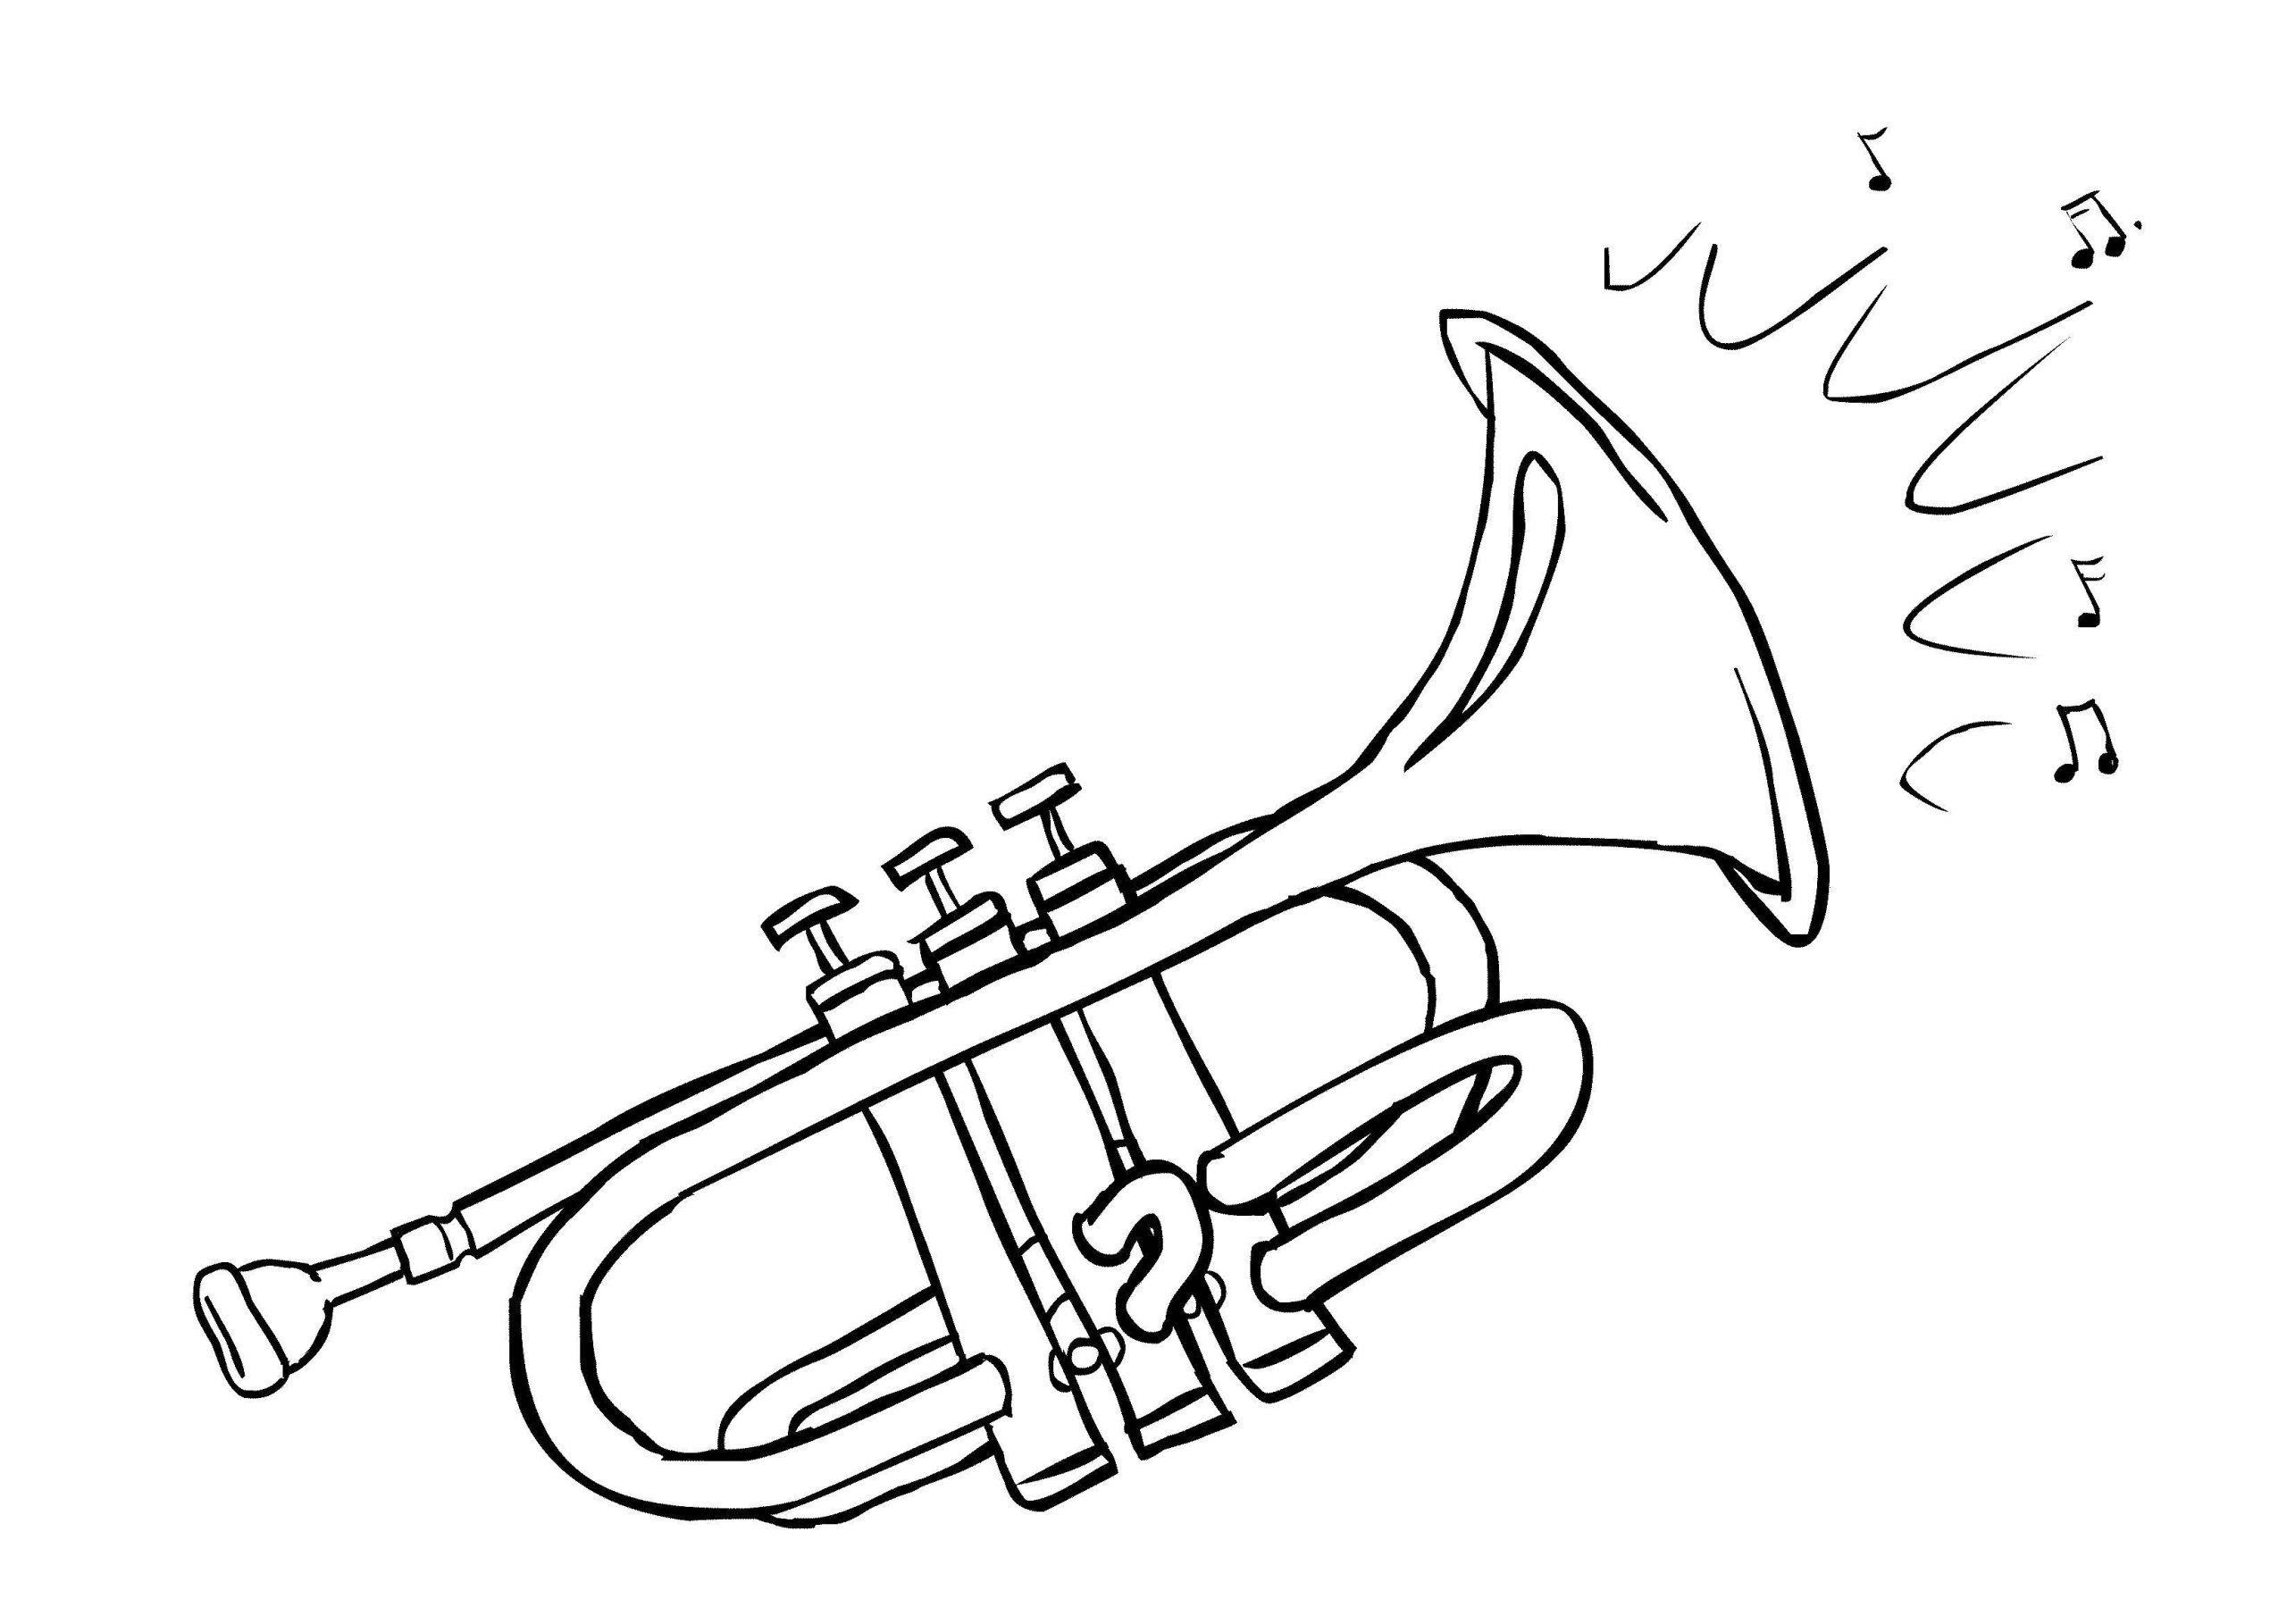 Как нарисовать труб